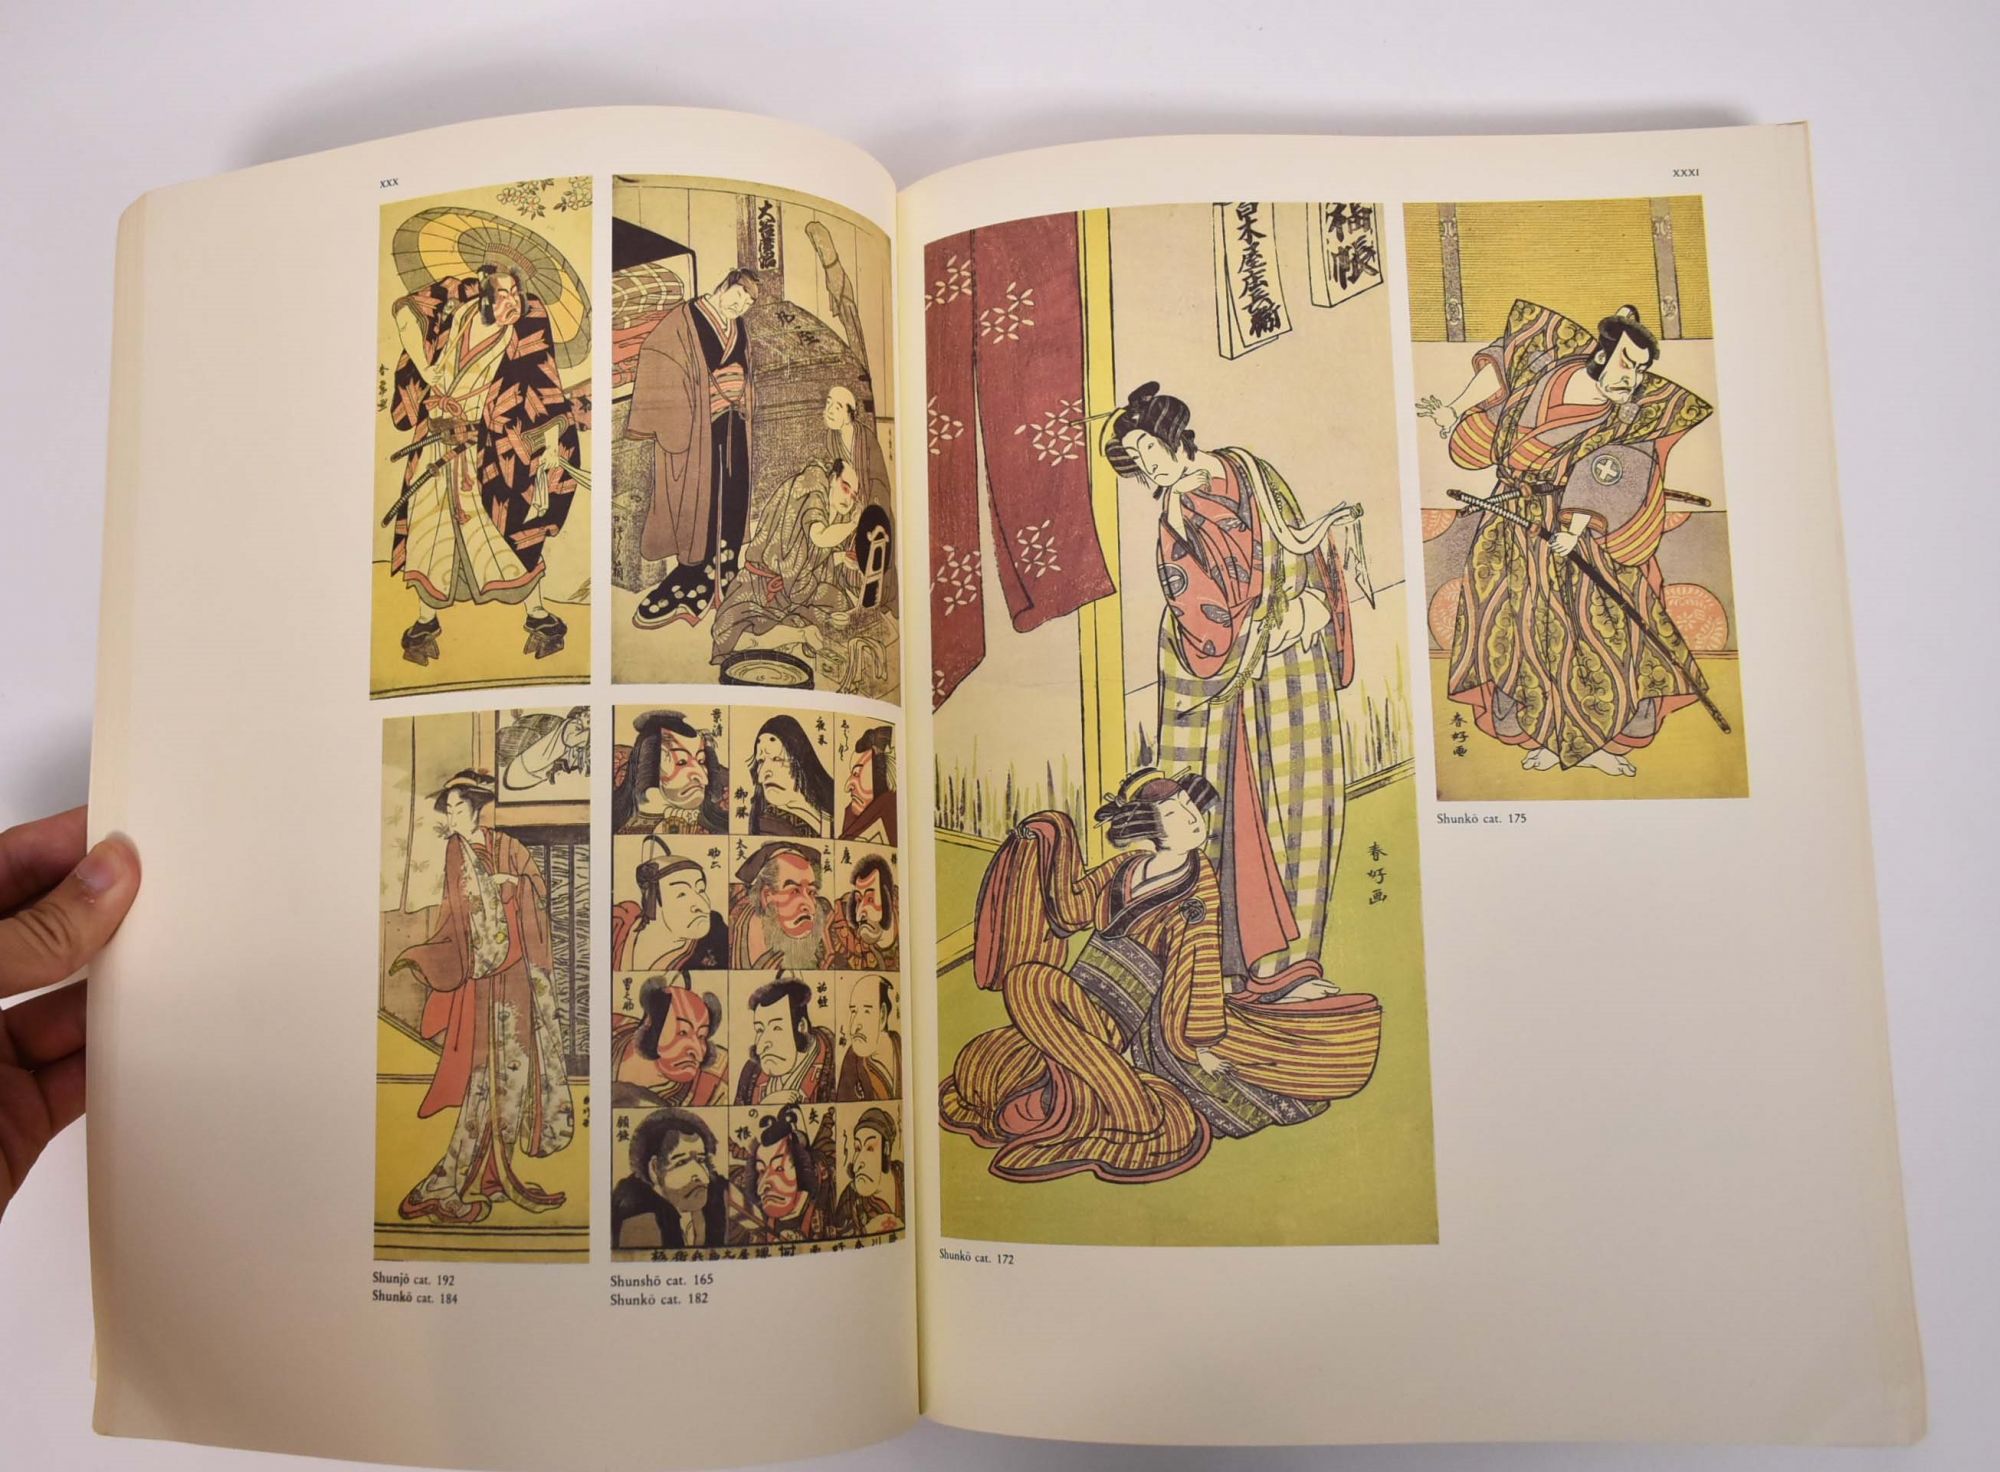 Estampes Japonaises: Collection des Musees Royaux d'Art et d 